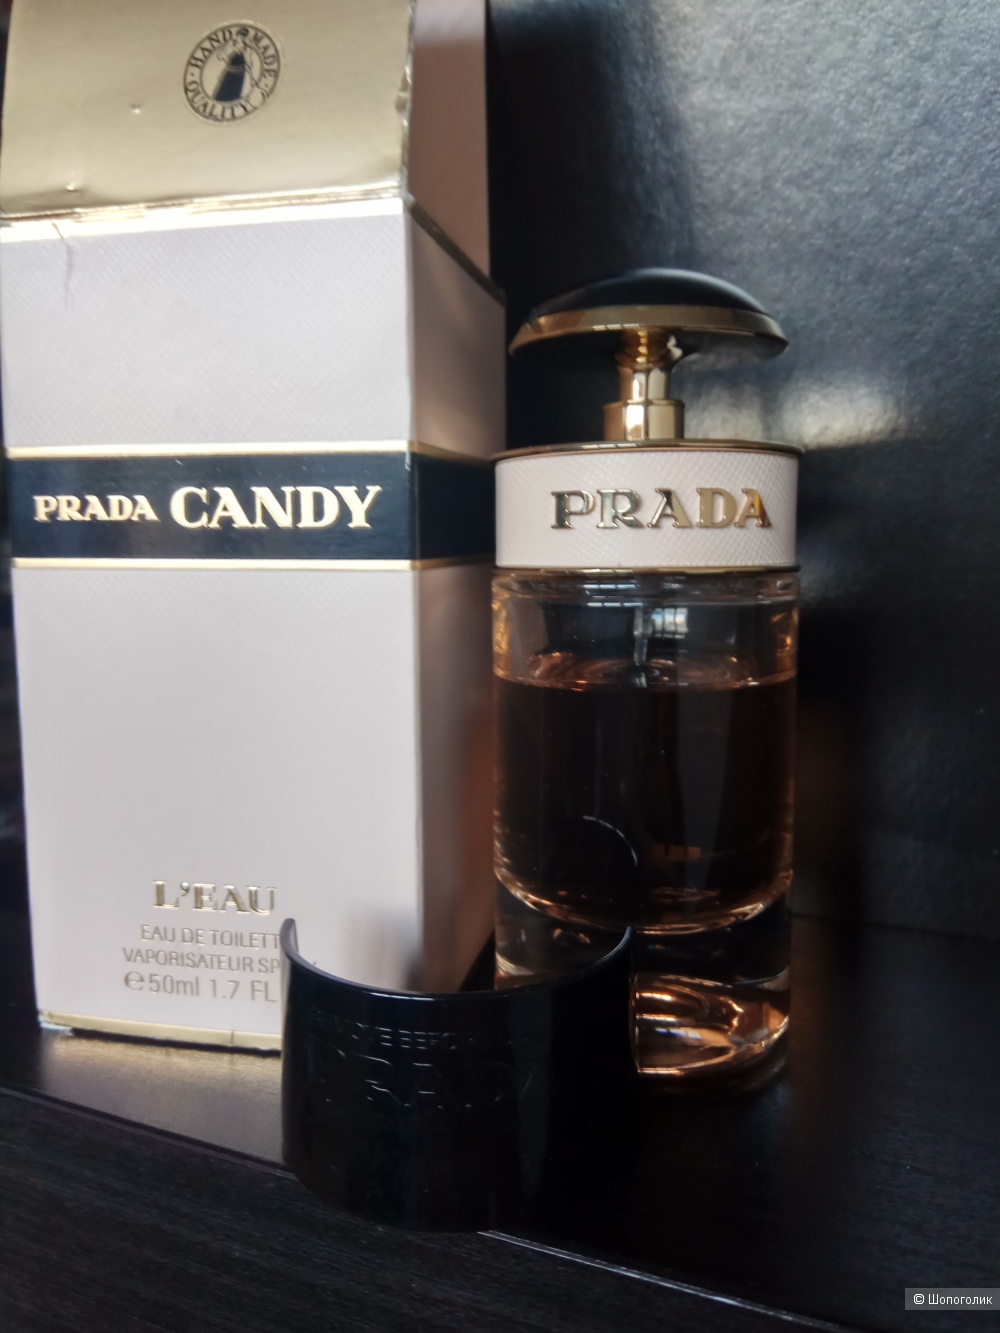 Prada Candy L'eau(edt,флакон 50 мл)